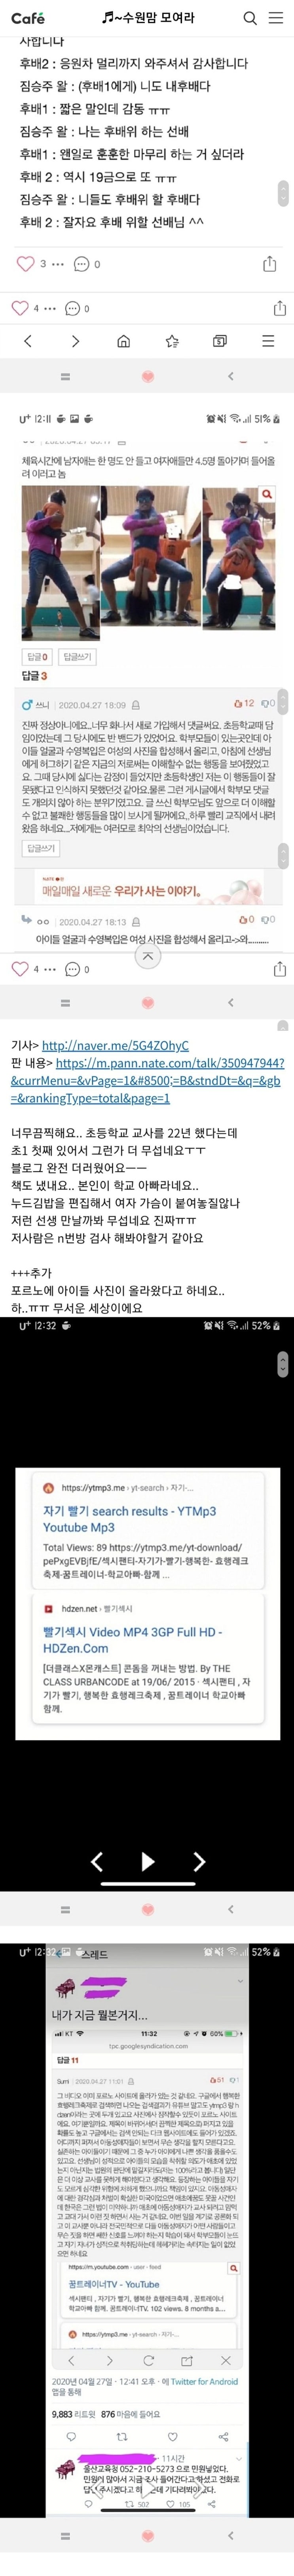 울산 『팬티빨기 숙제』 1학년 초등교사 추가괴담